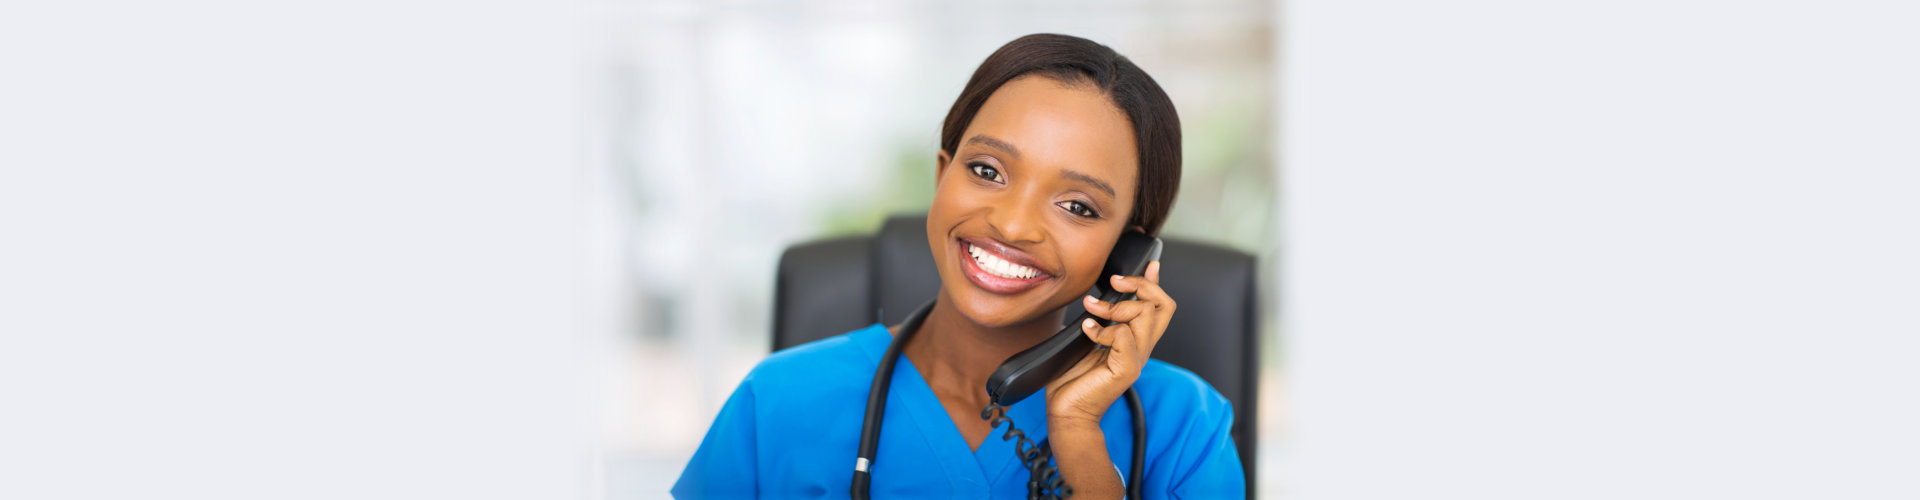 nurse having a call